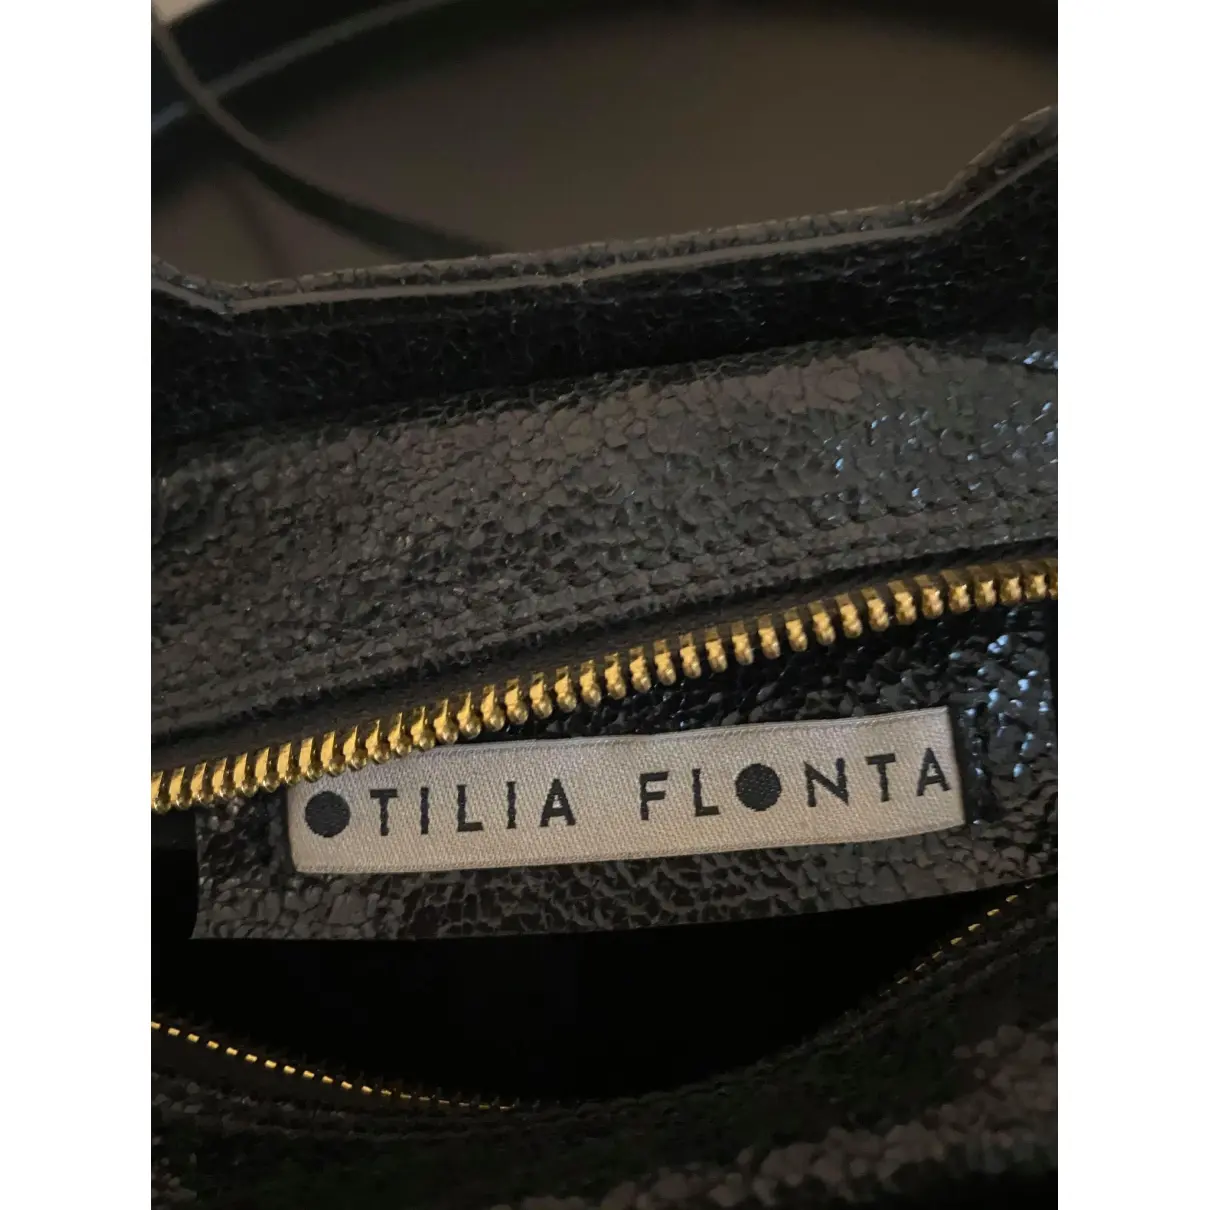 Luxury Otilia Flonta Handbags Women